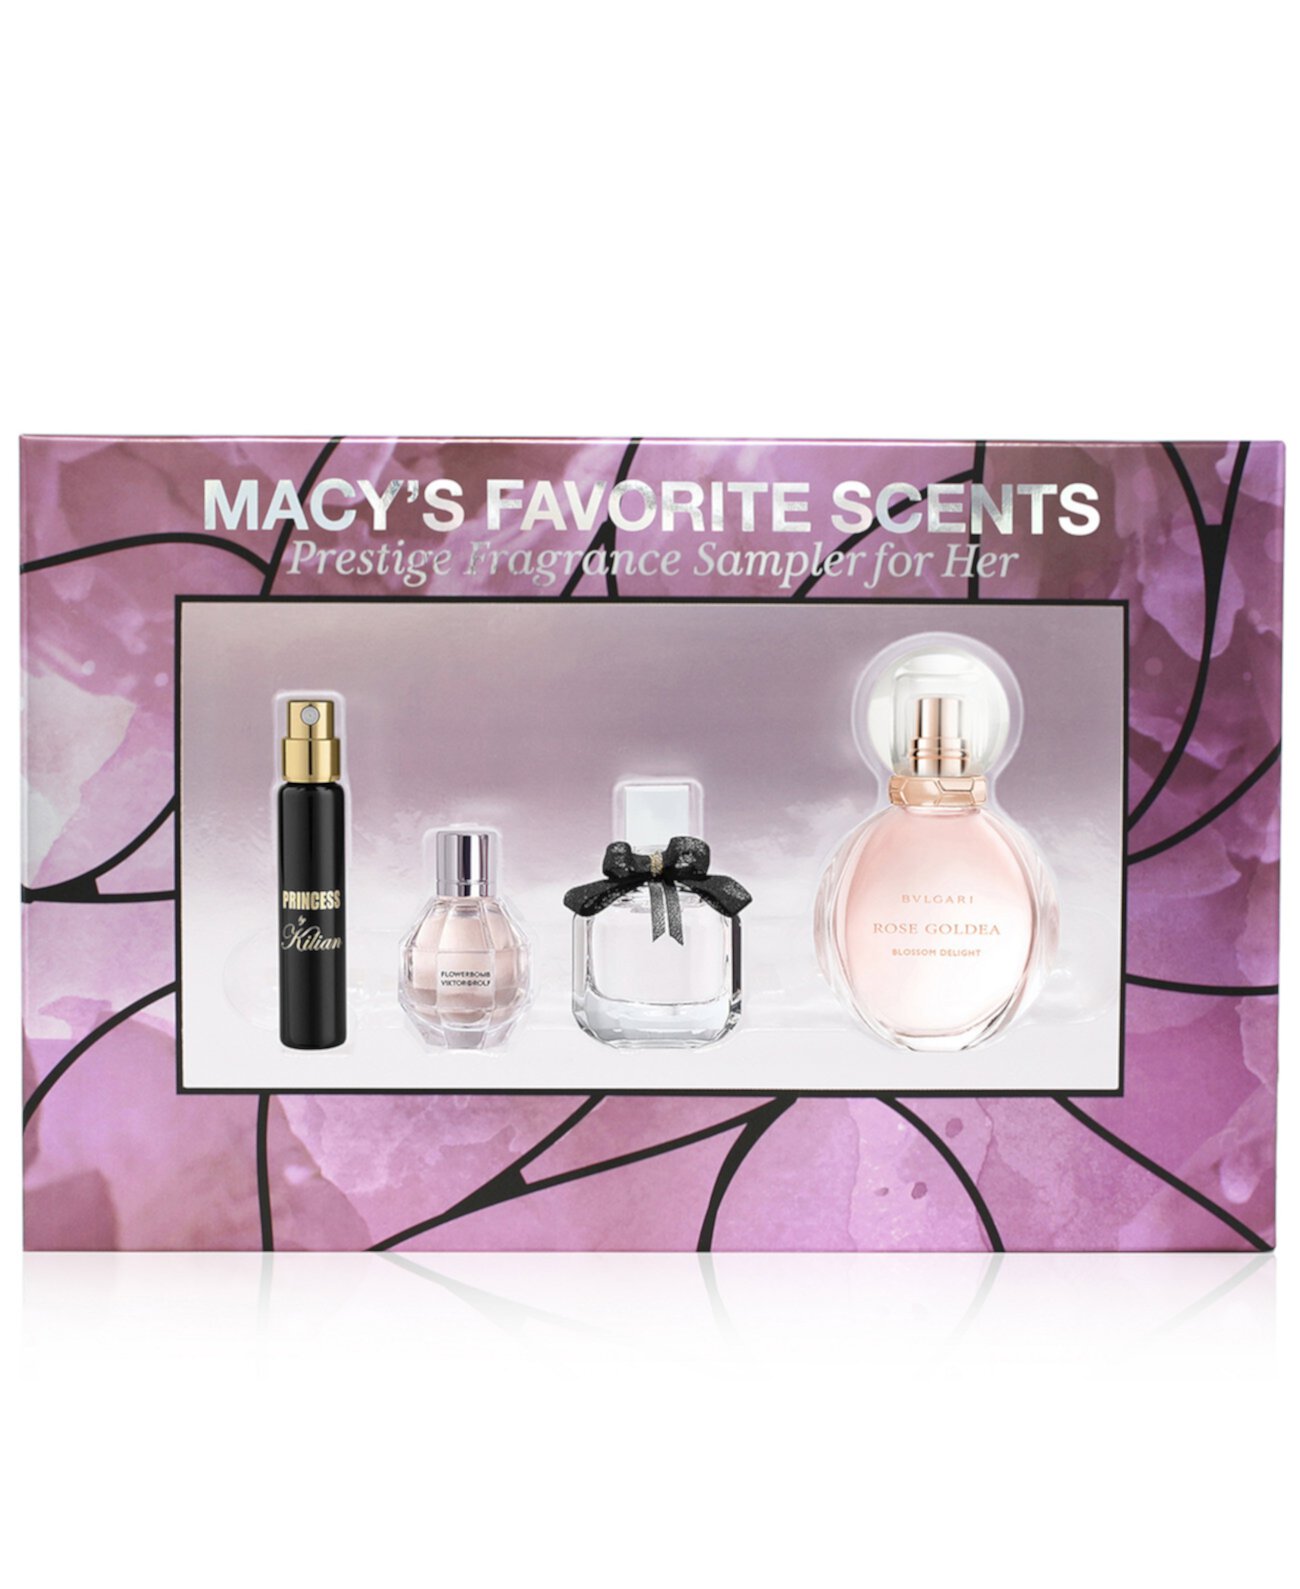 4 шт. Престижный набор образцов аромата Macy's Favorite Scents, созданный для Macy's Created For Macy's